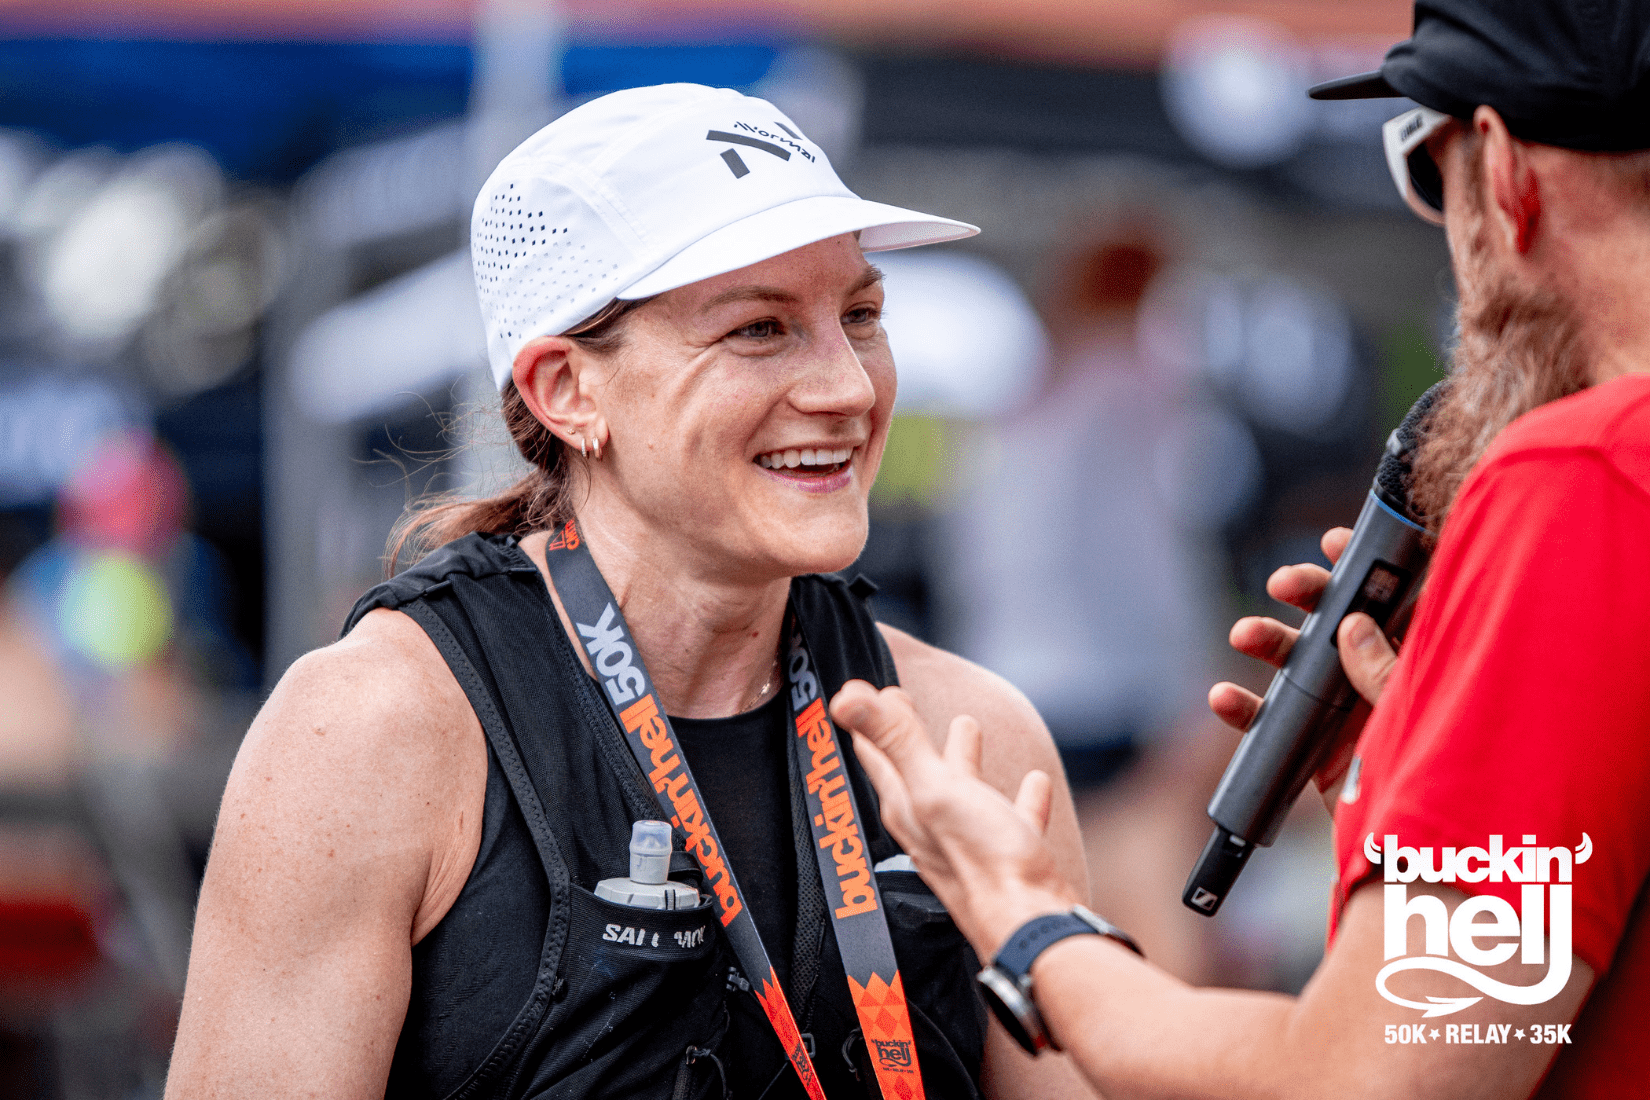 A woman receiving a medal after running a race.